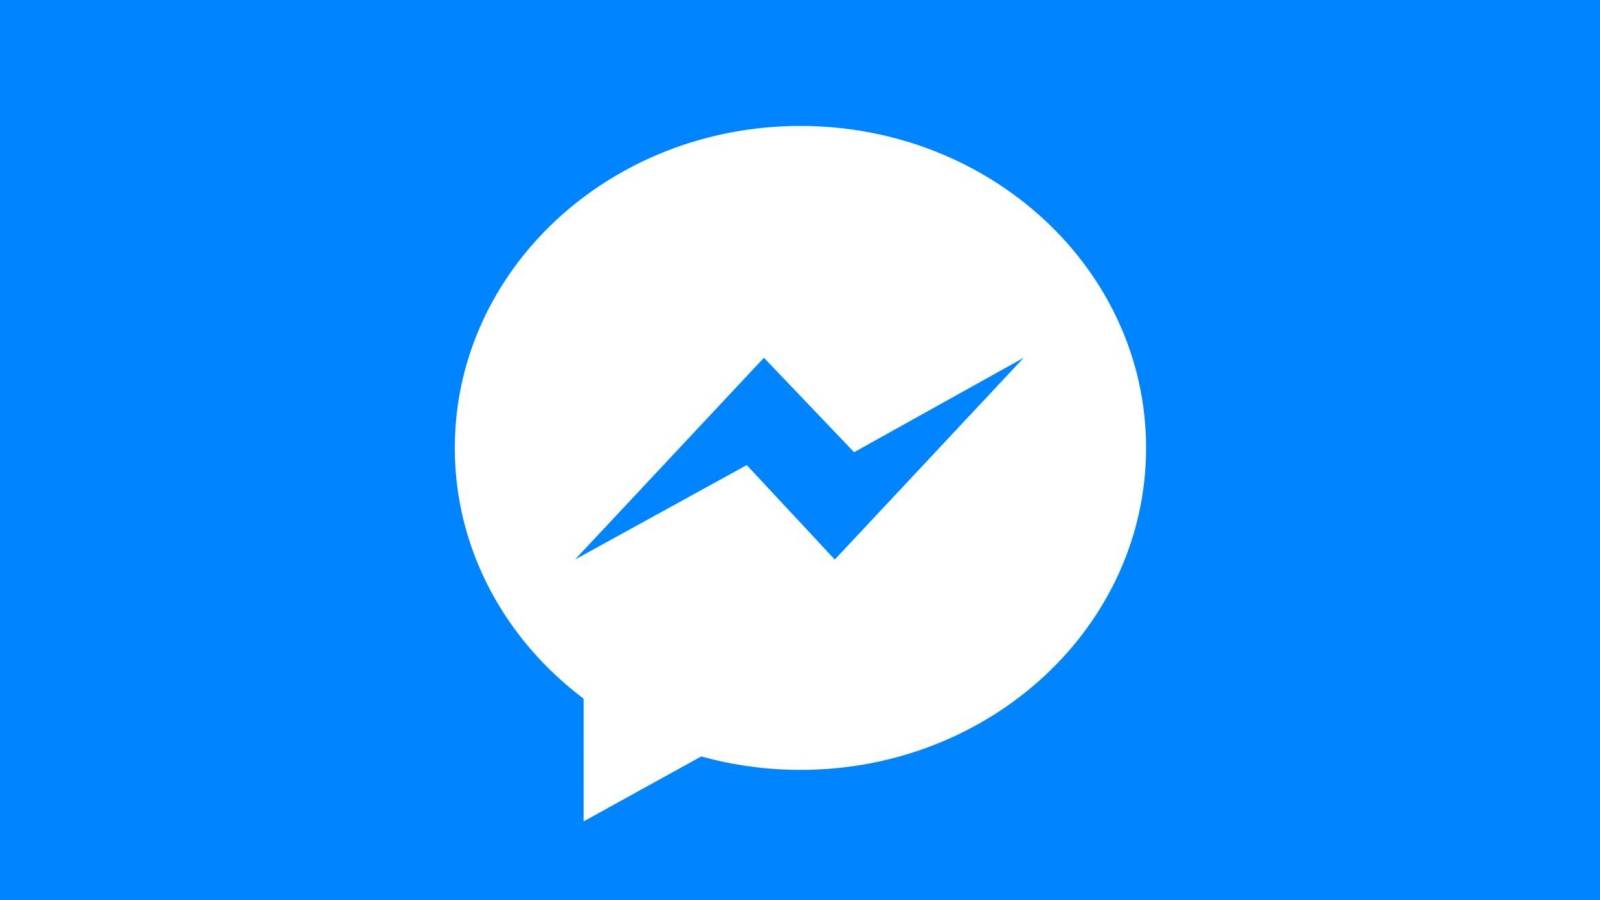 Facebook Messenger Update este Disponibil pentru Utilizatorii din Toata Lumea